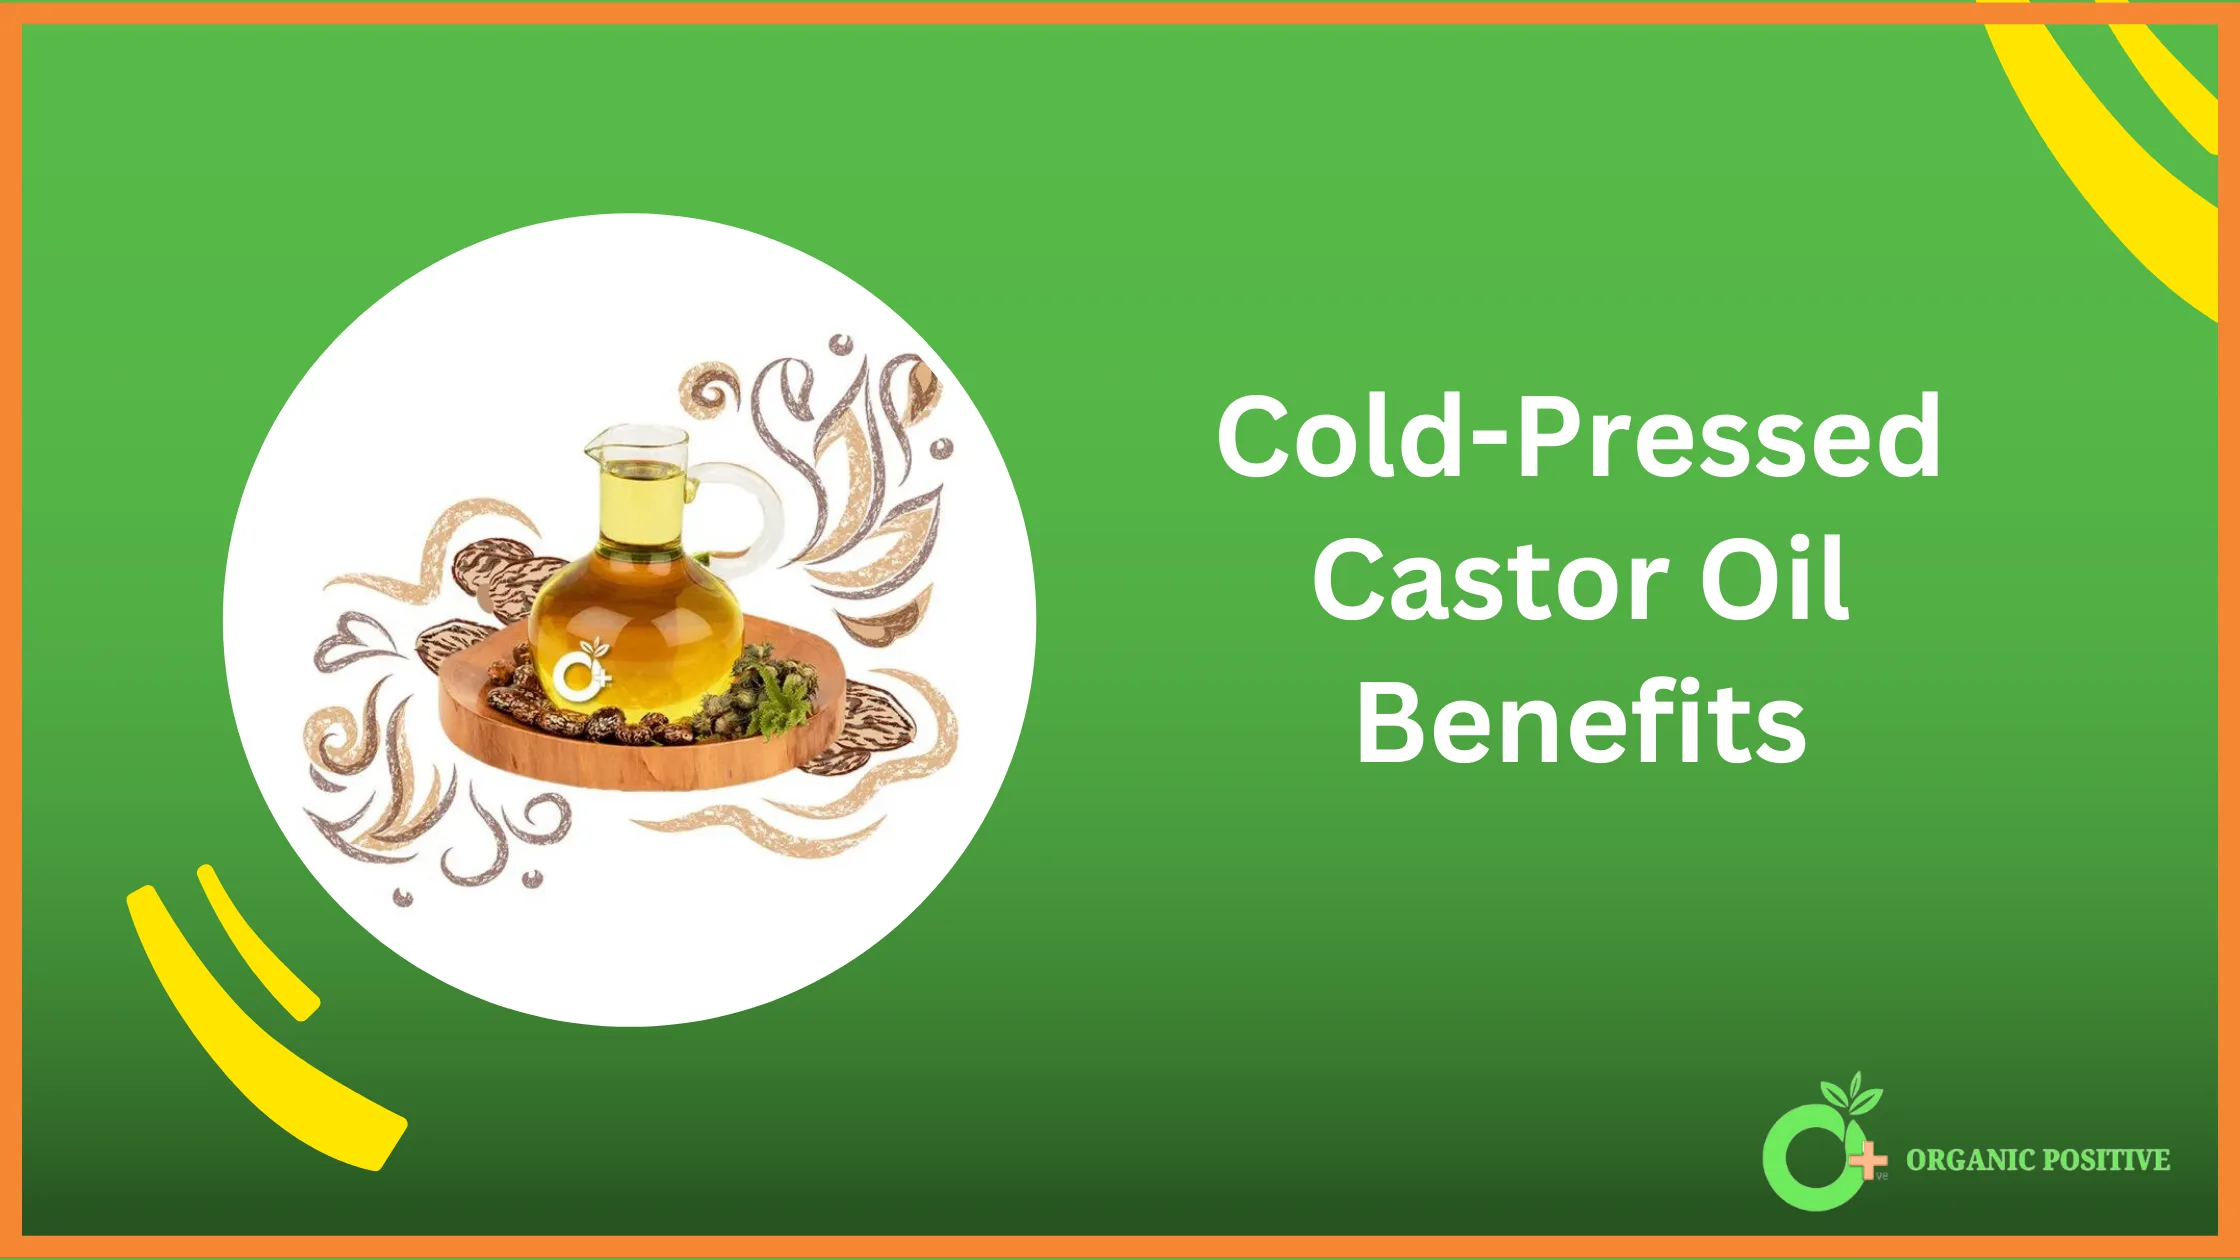 Cold-Pressed Castor Oil Benefits